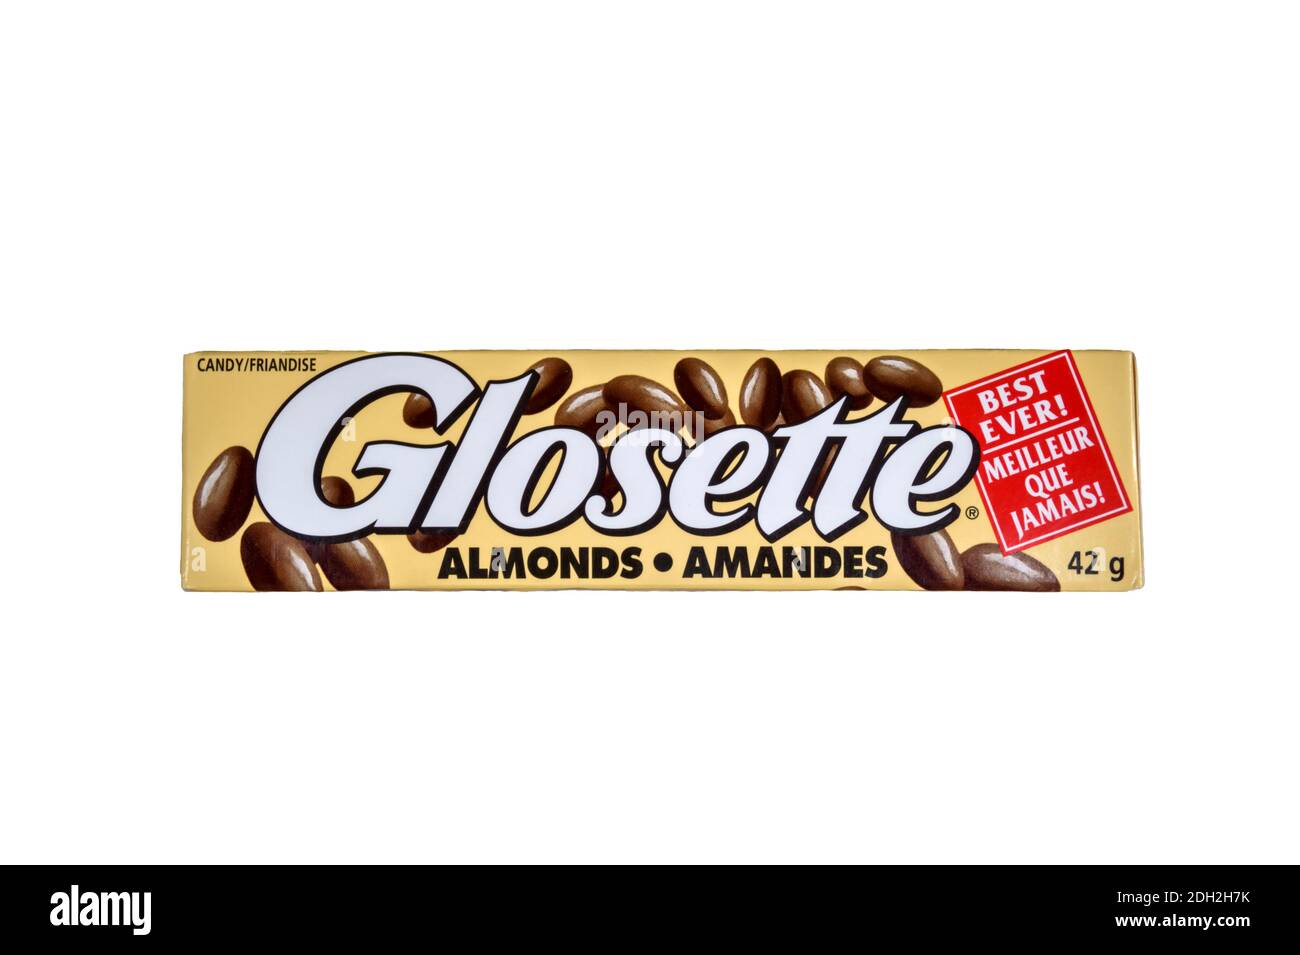 Un paquete de almendras cubiertas de chocolate Glosette se vende exclusivamente en Canadá. Foto de stock